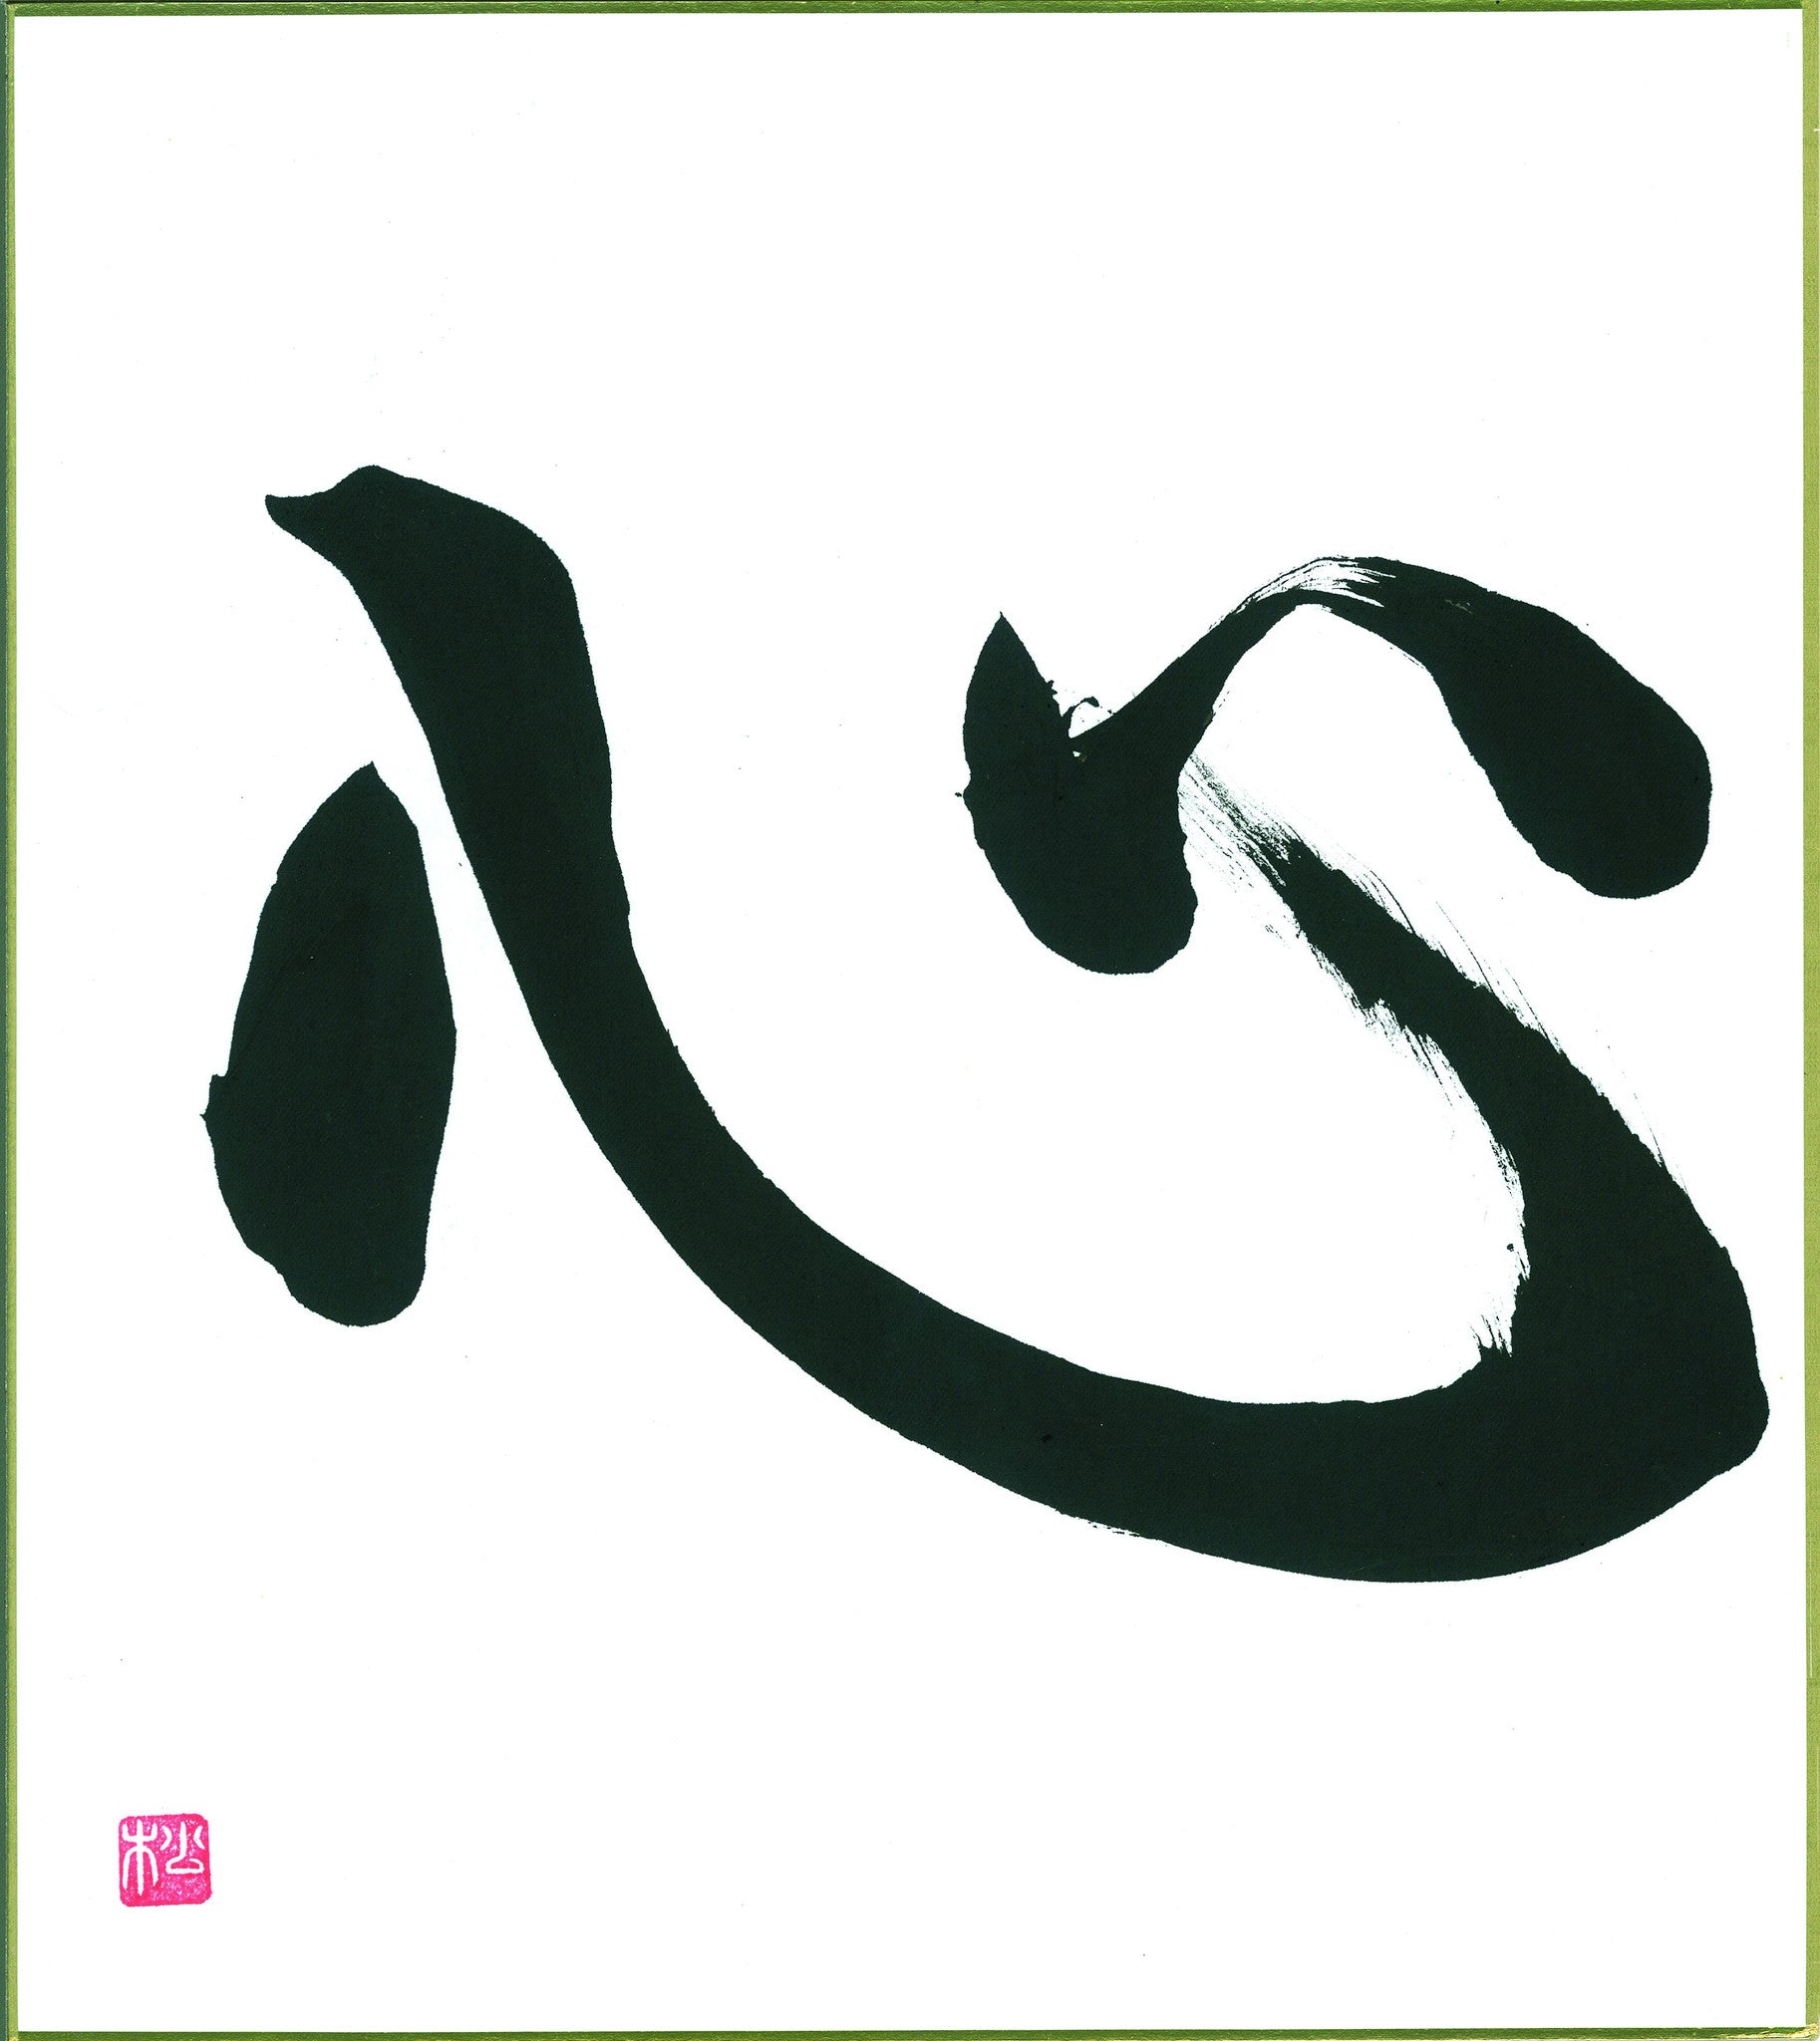 heart kanji